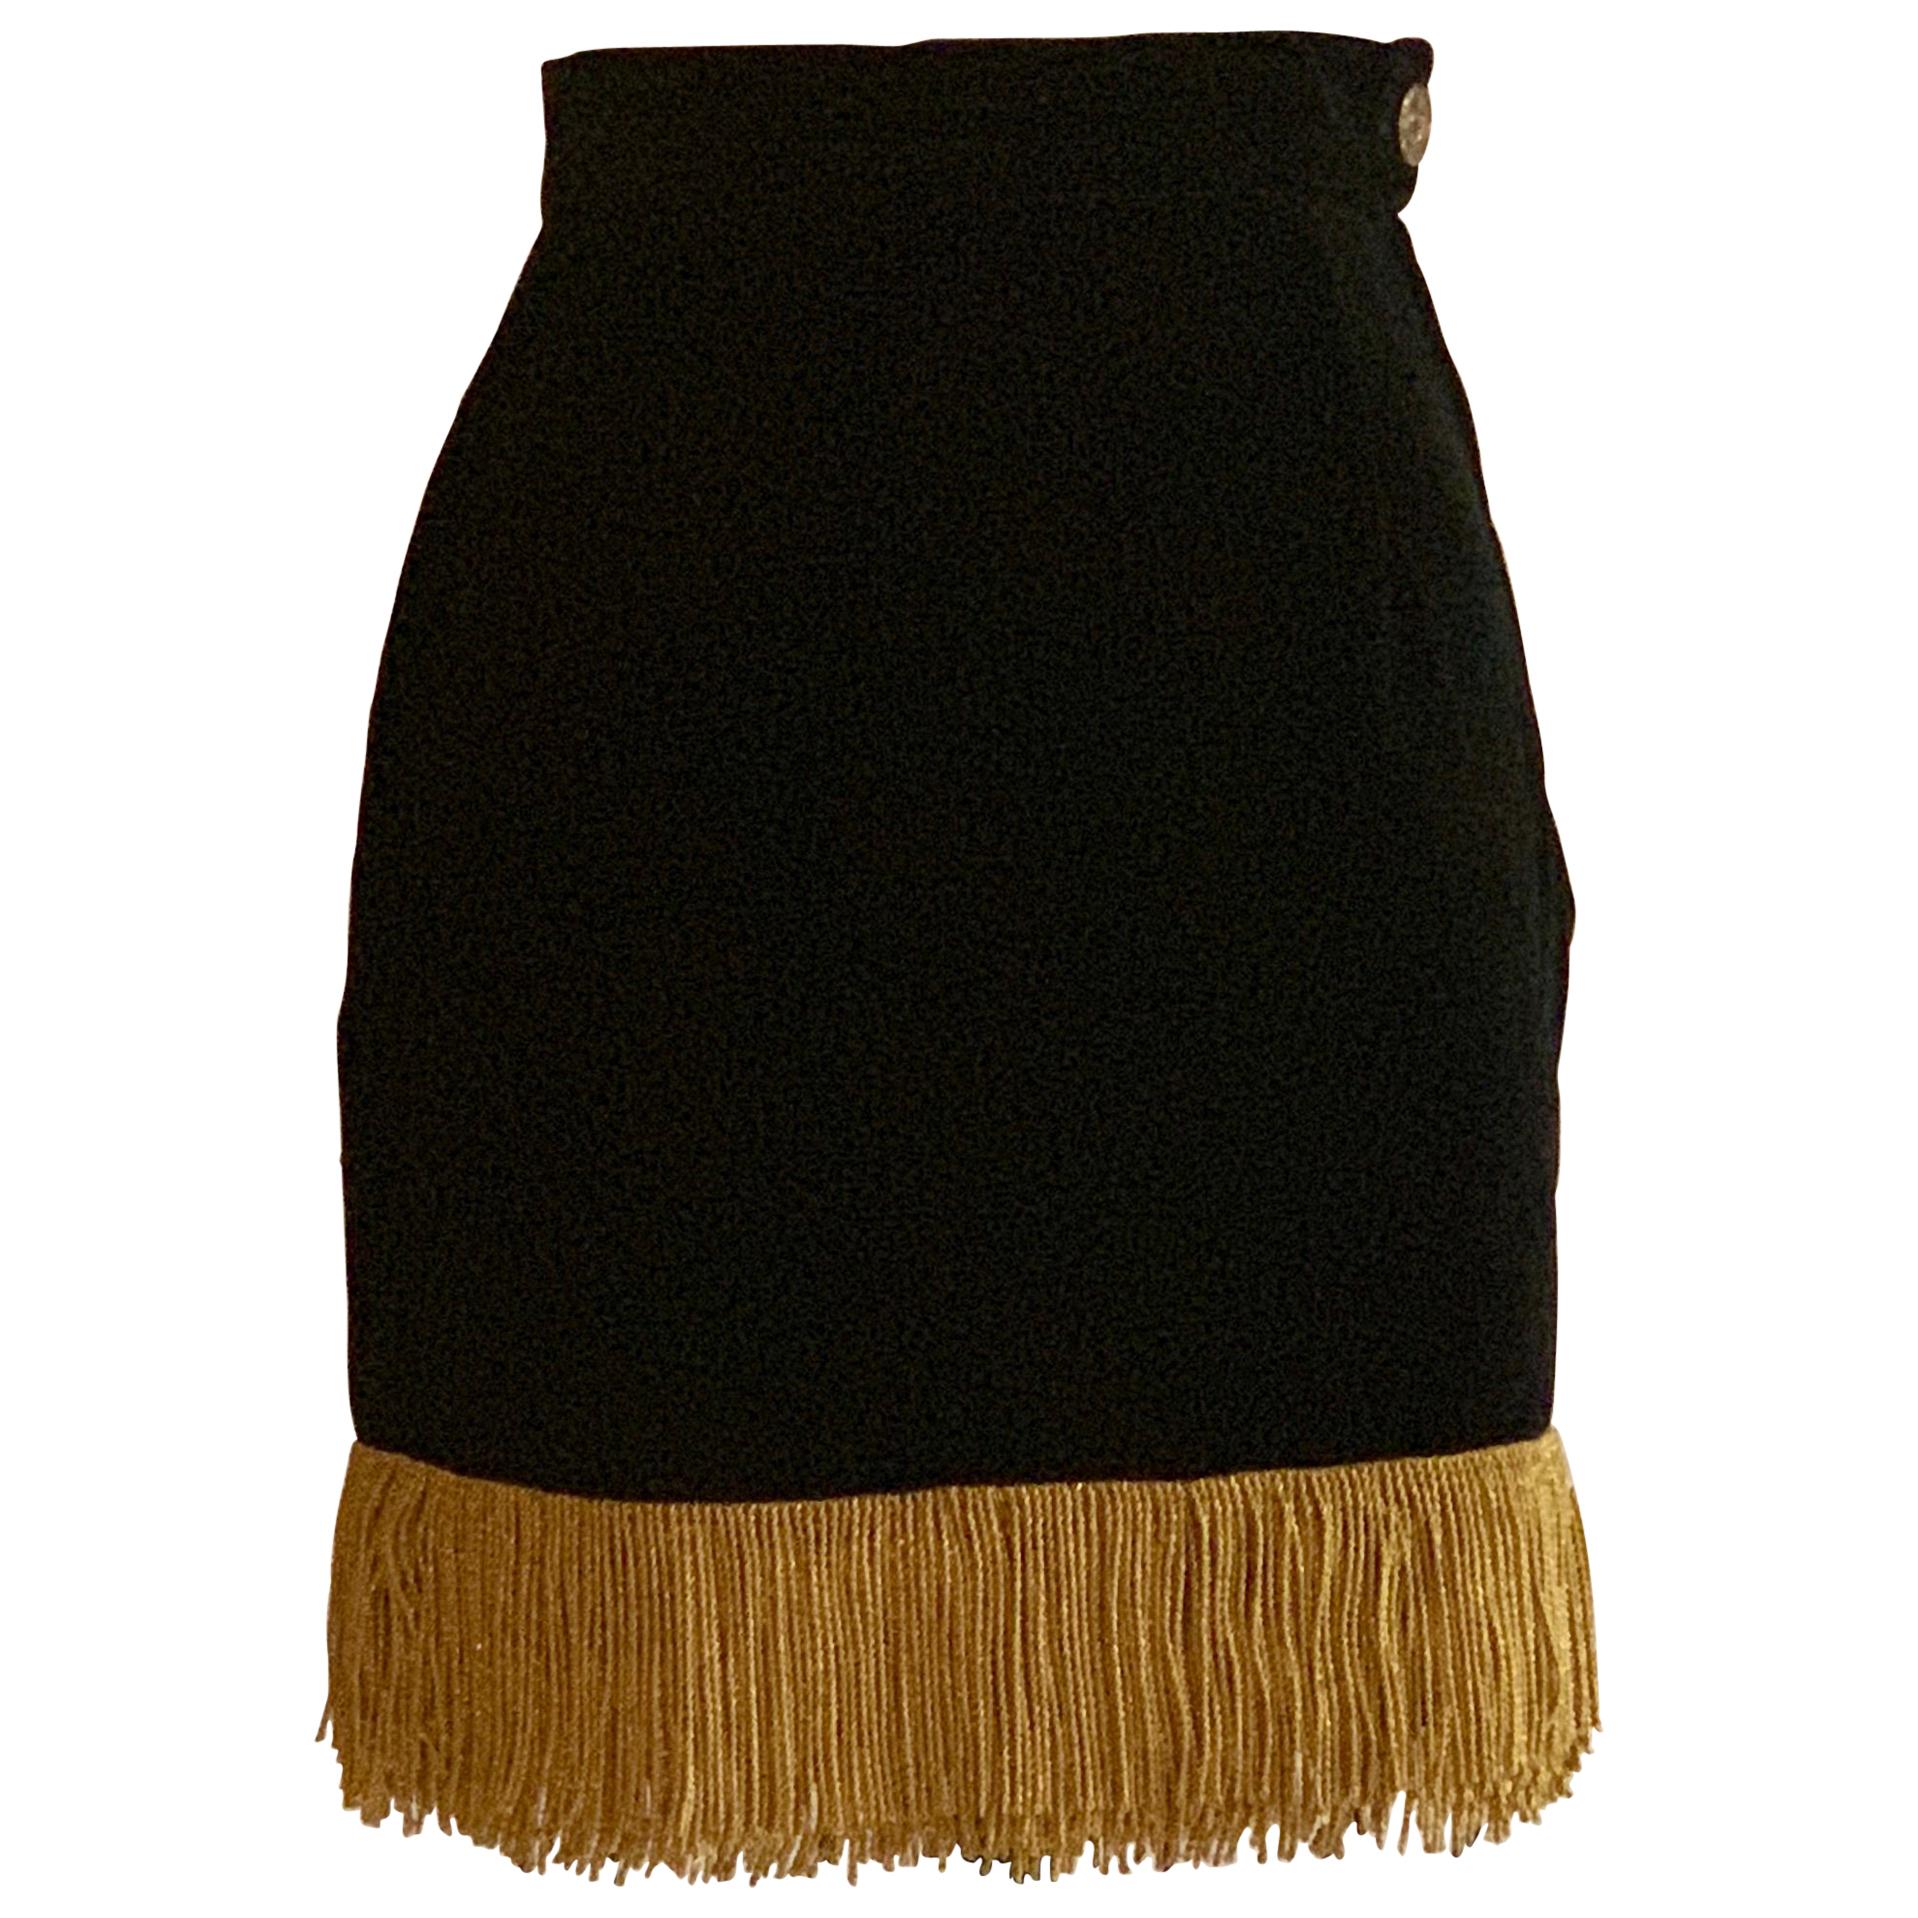 Moschino 1990s Black Velvet Pencil Skirt with Gold Fringe Trim